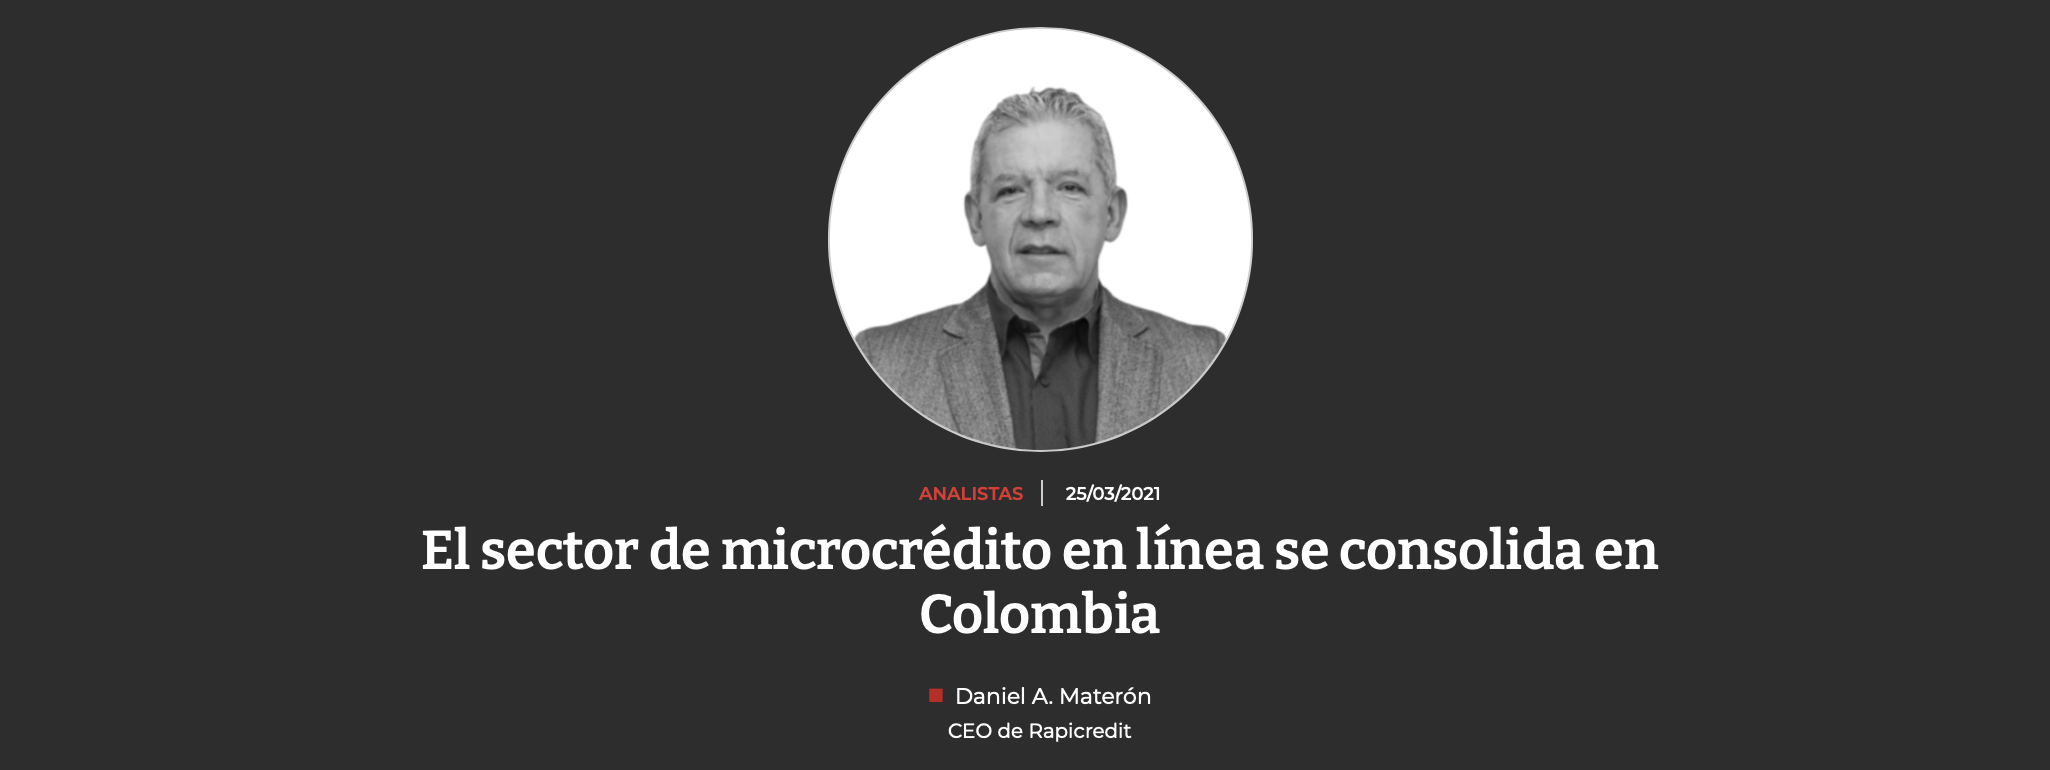 El sector de microcrédito en línea se consolida en Colombia